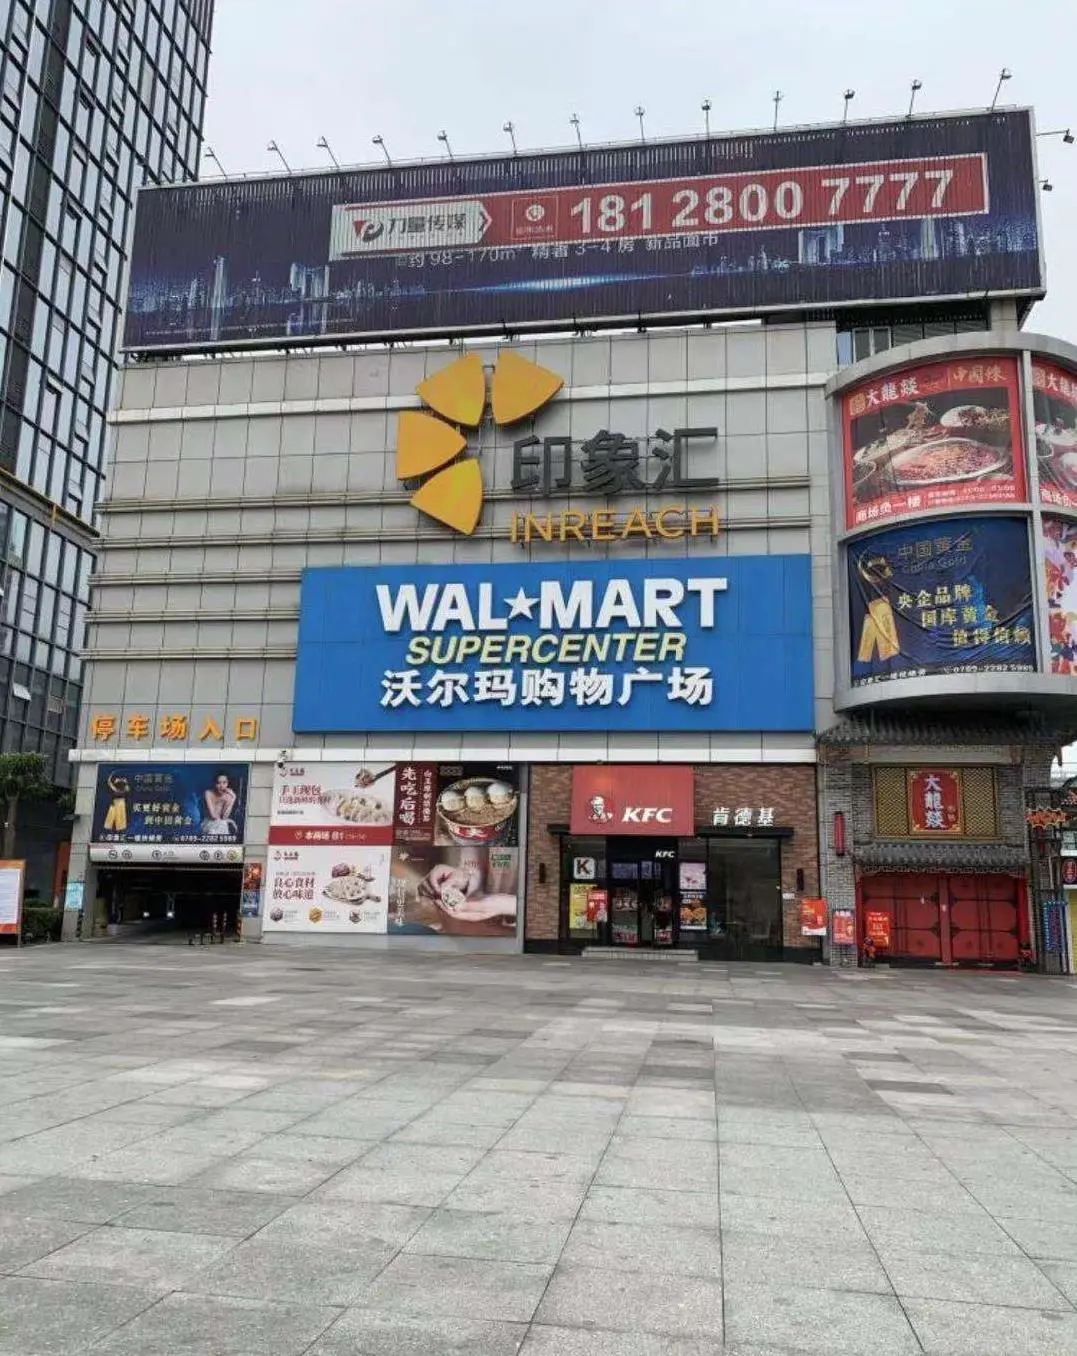 WalMart 沃尔玛购物广场